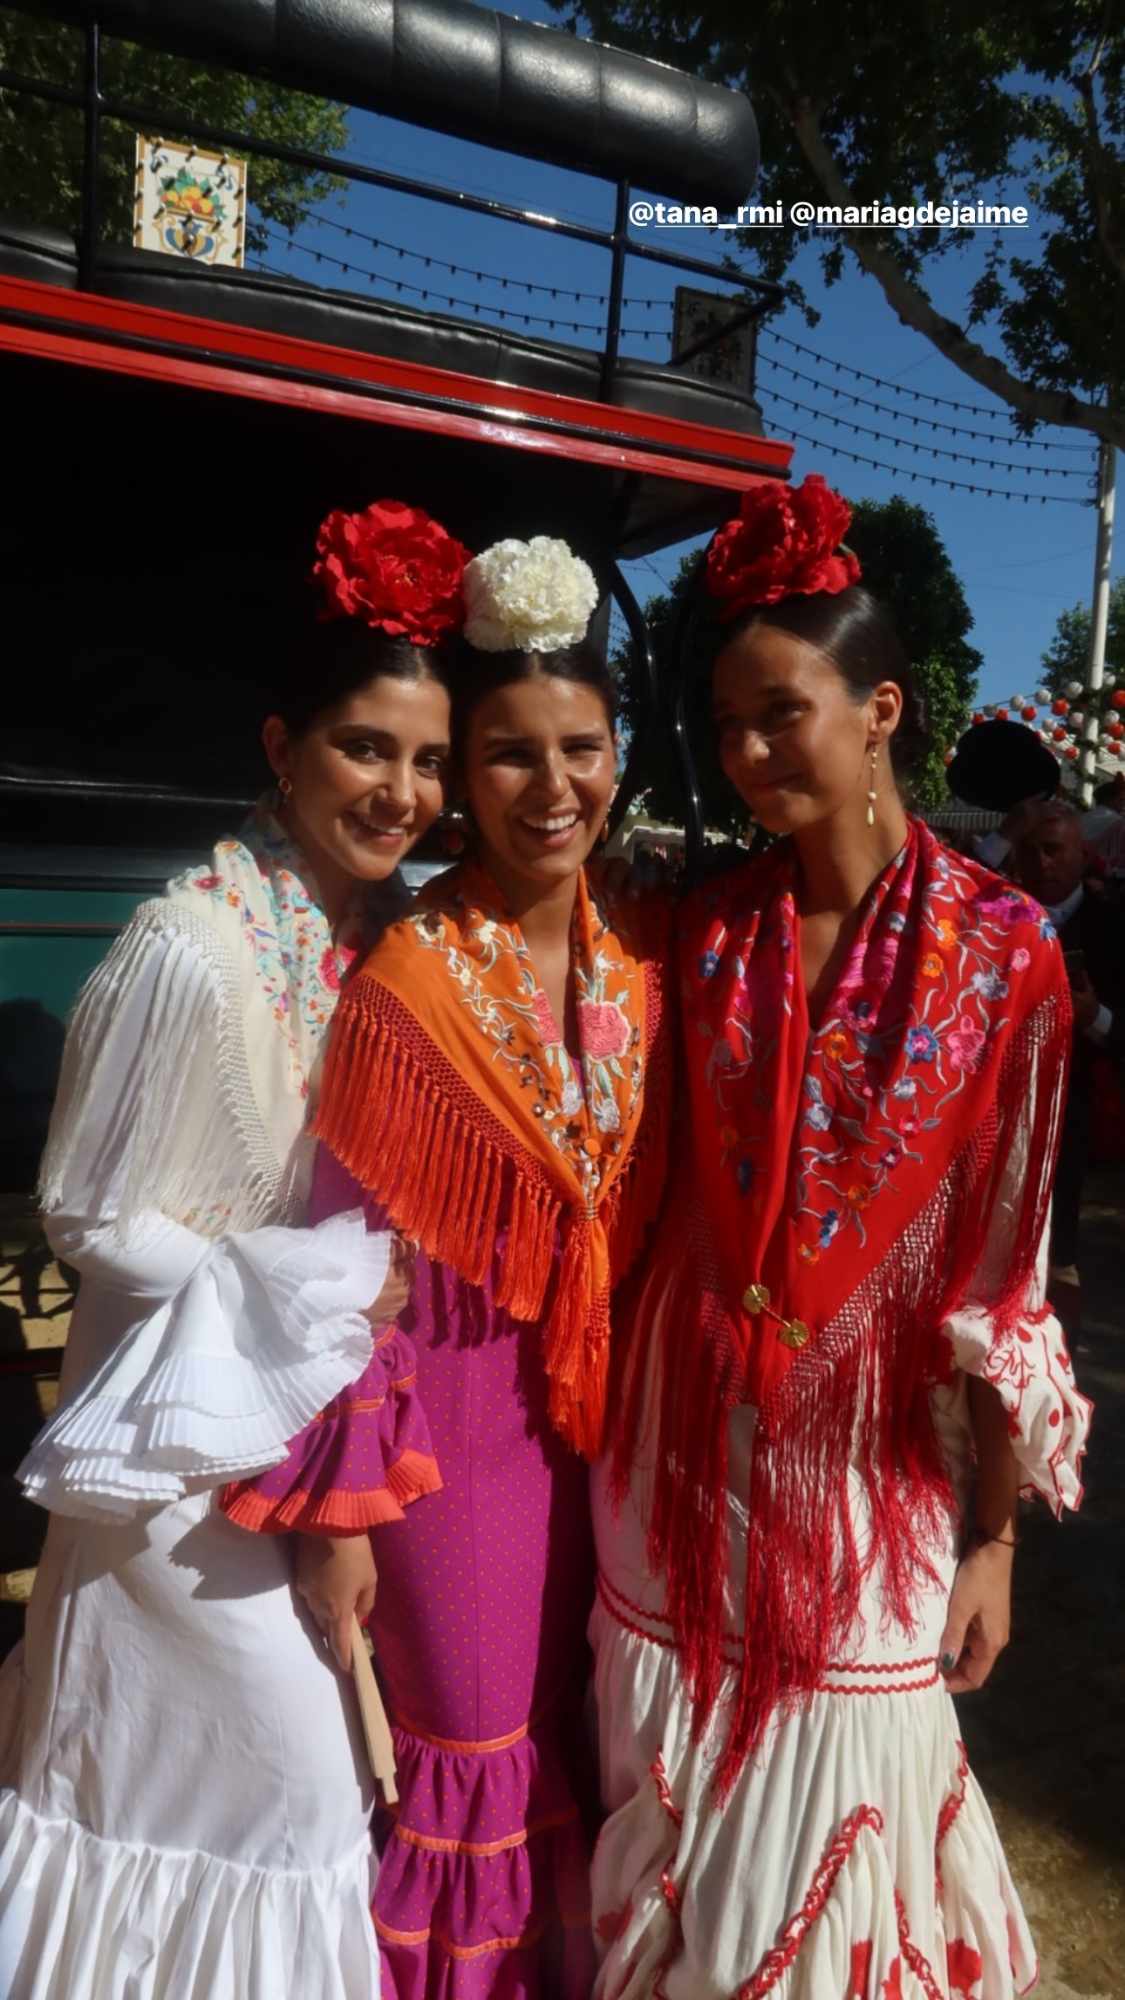 Victoria Federica con Cayetana Rivera y otras amigas en la Feria de Abril.